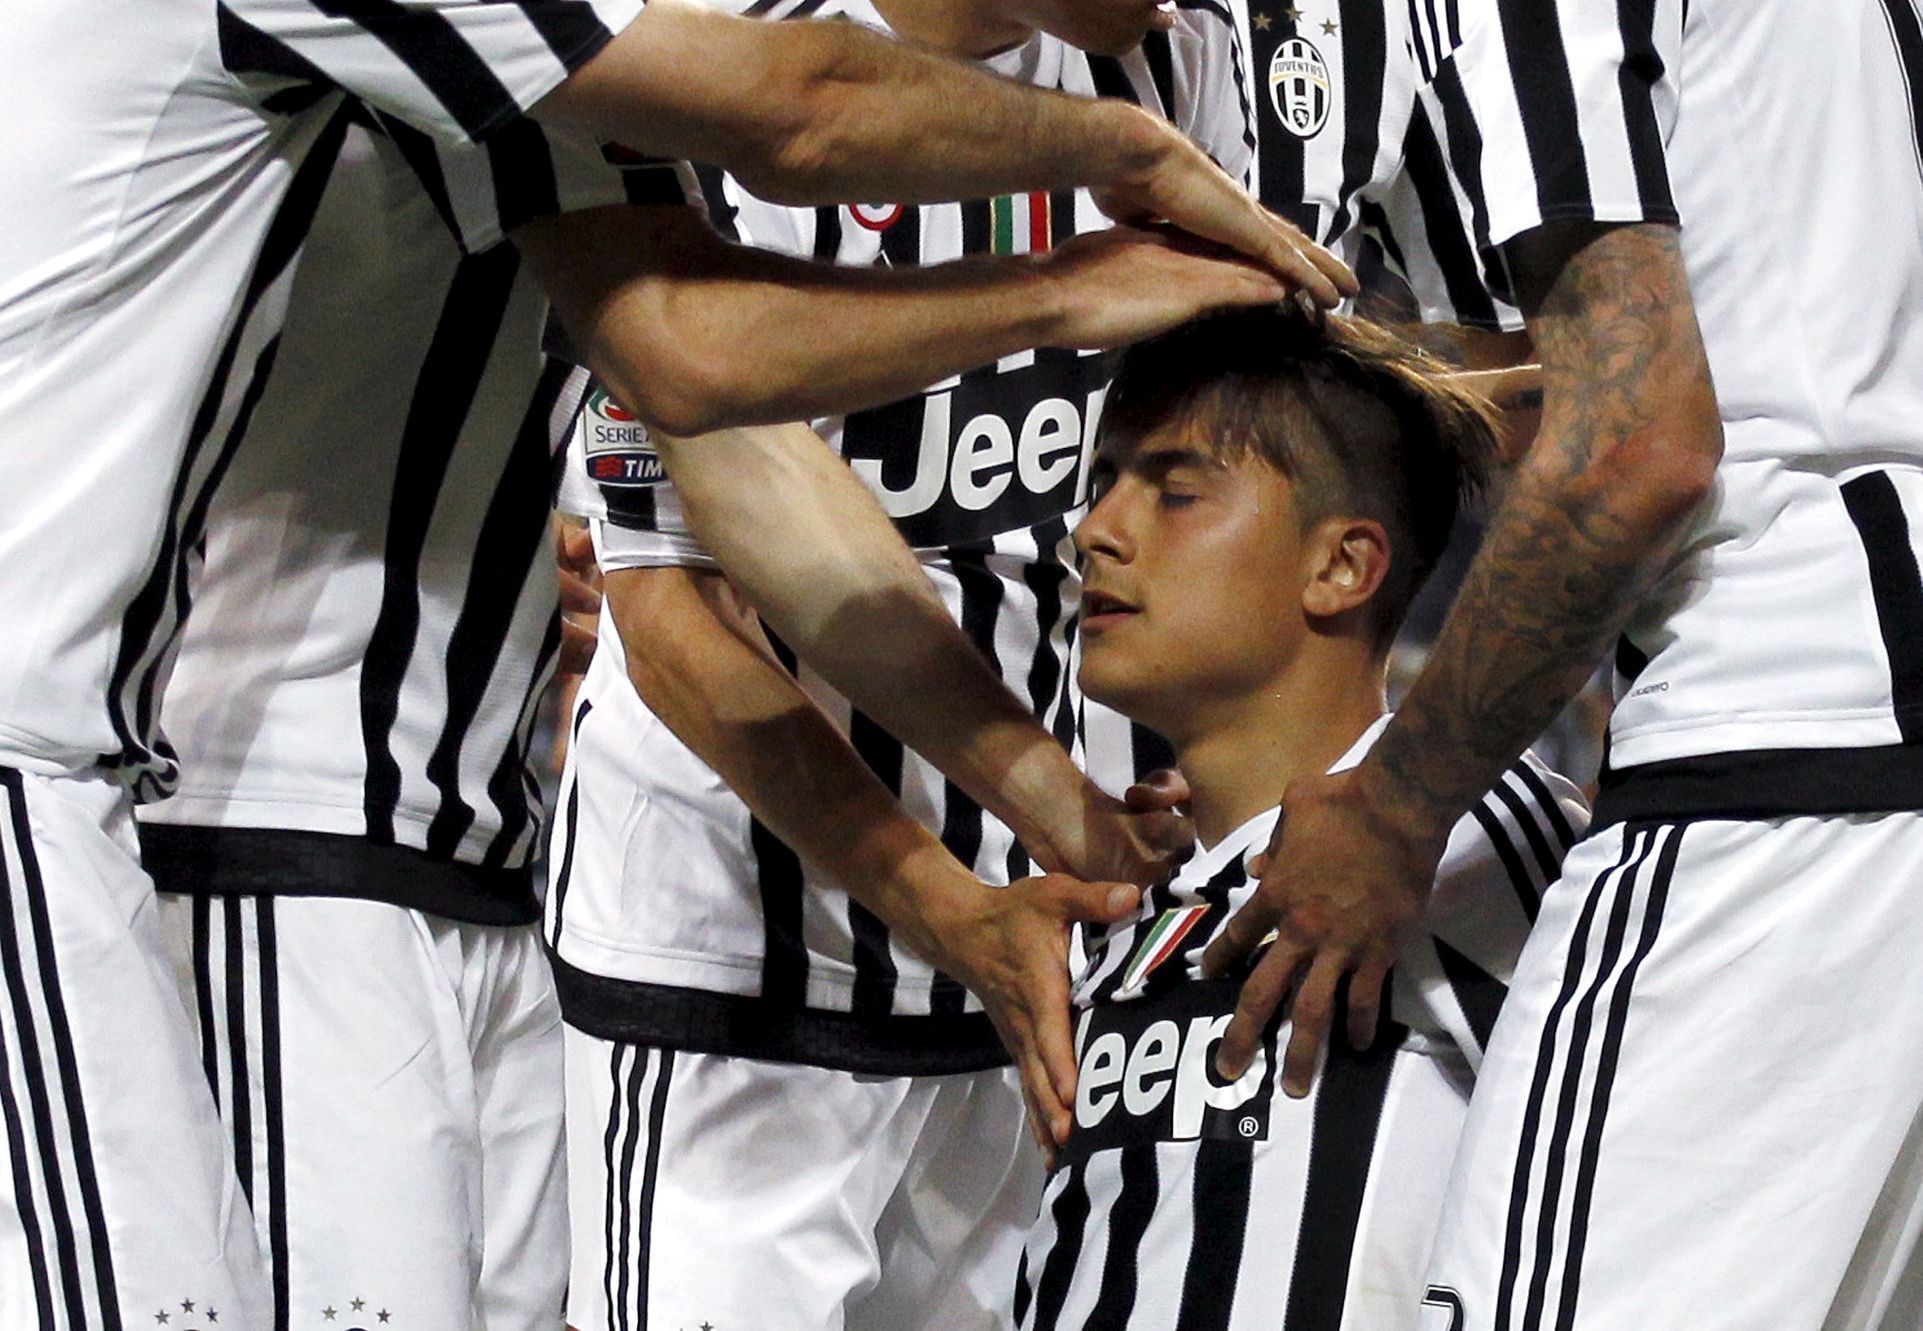 Paulo Dybala slaví gól Juventusu